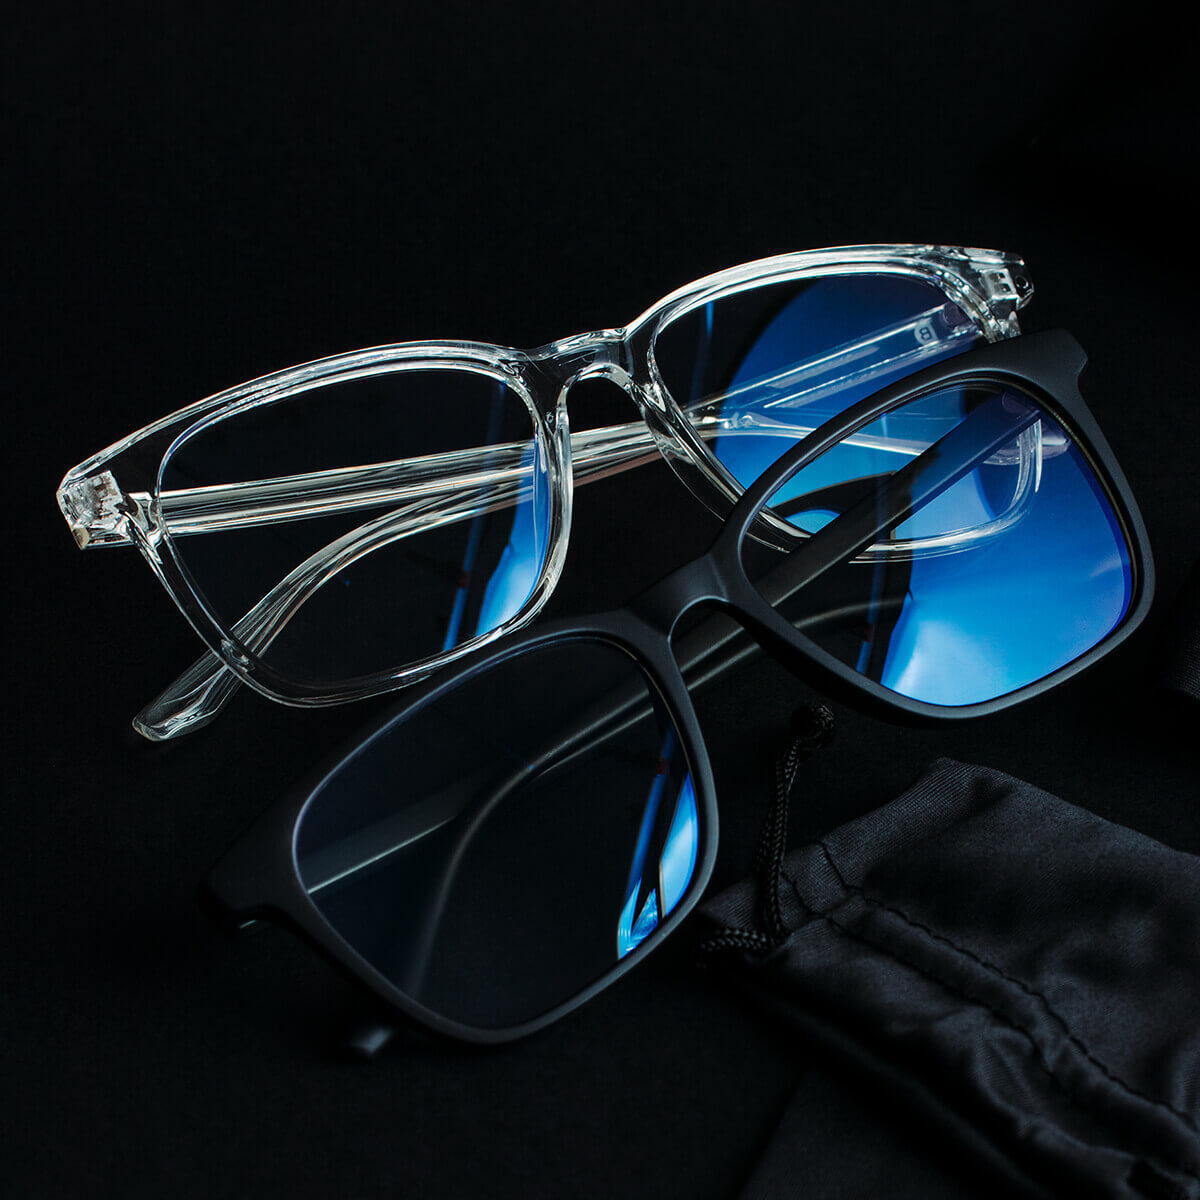 BENDAN MOON kéfkényűrős szemüvegek